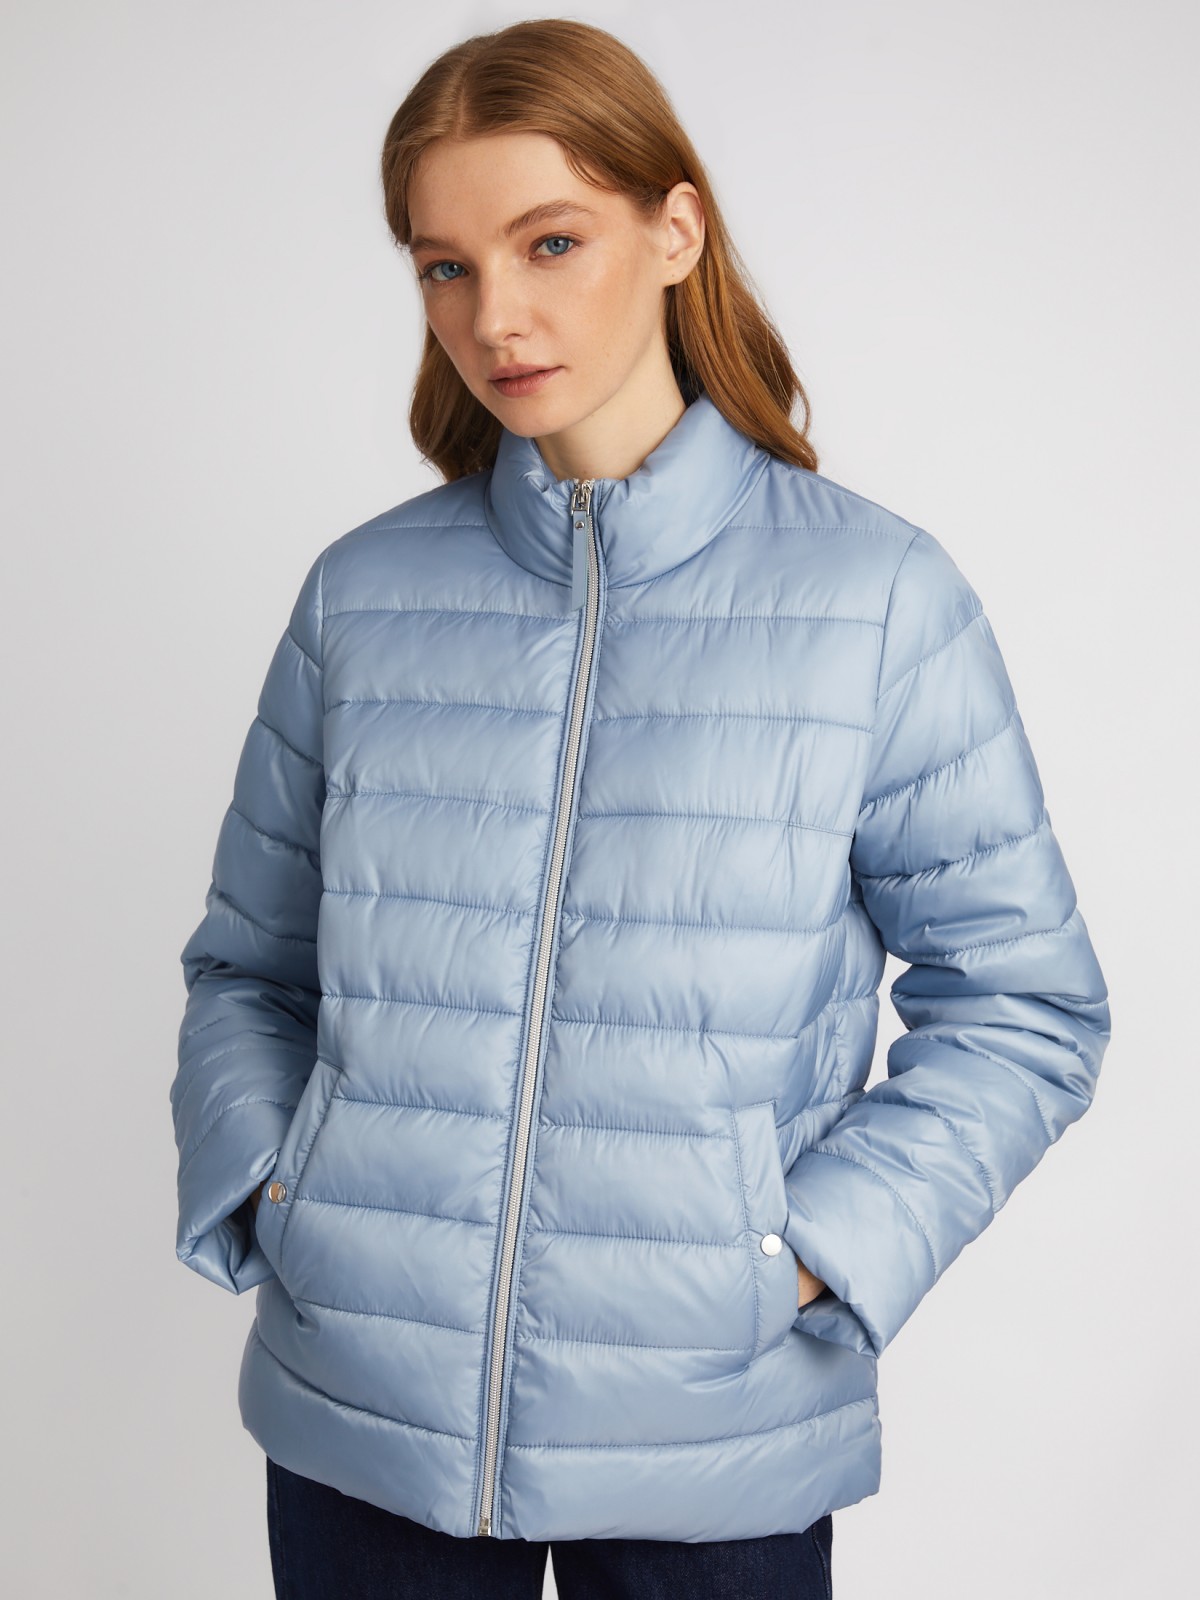 Утеплённая короткая куртка на молнии с воротником zolla 024135112154, цвет голубой, размер S - фото 3